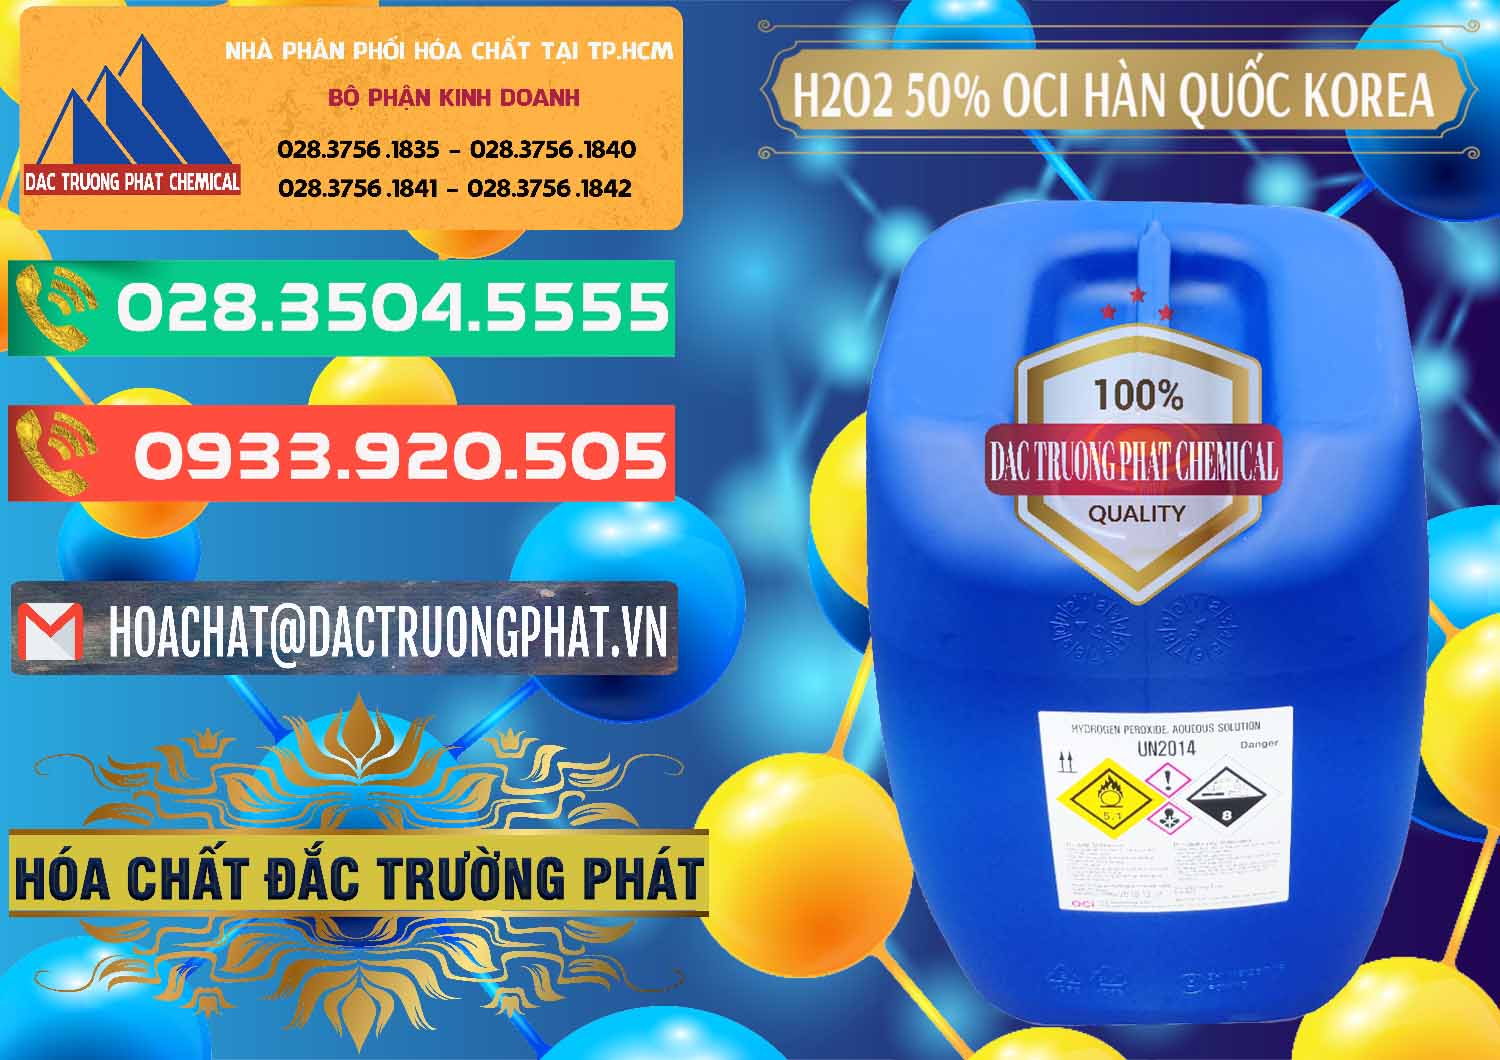 Nơi bán và cung ứng H2O2 - Hydrogen Peroxide 50% OCI Hàn Quốc Korea - 0075 - Đơn vị chuyên kinh doanh - phân phối hóa chất tại TP.HCM - congtyhoachat.com.vn